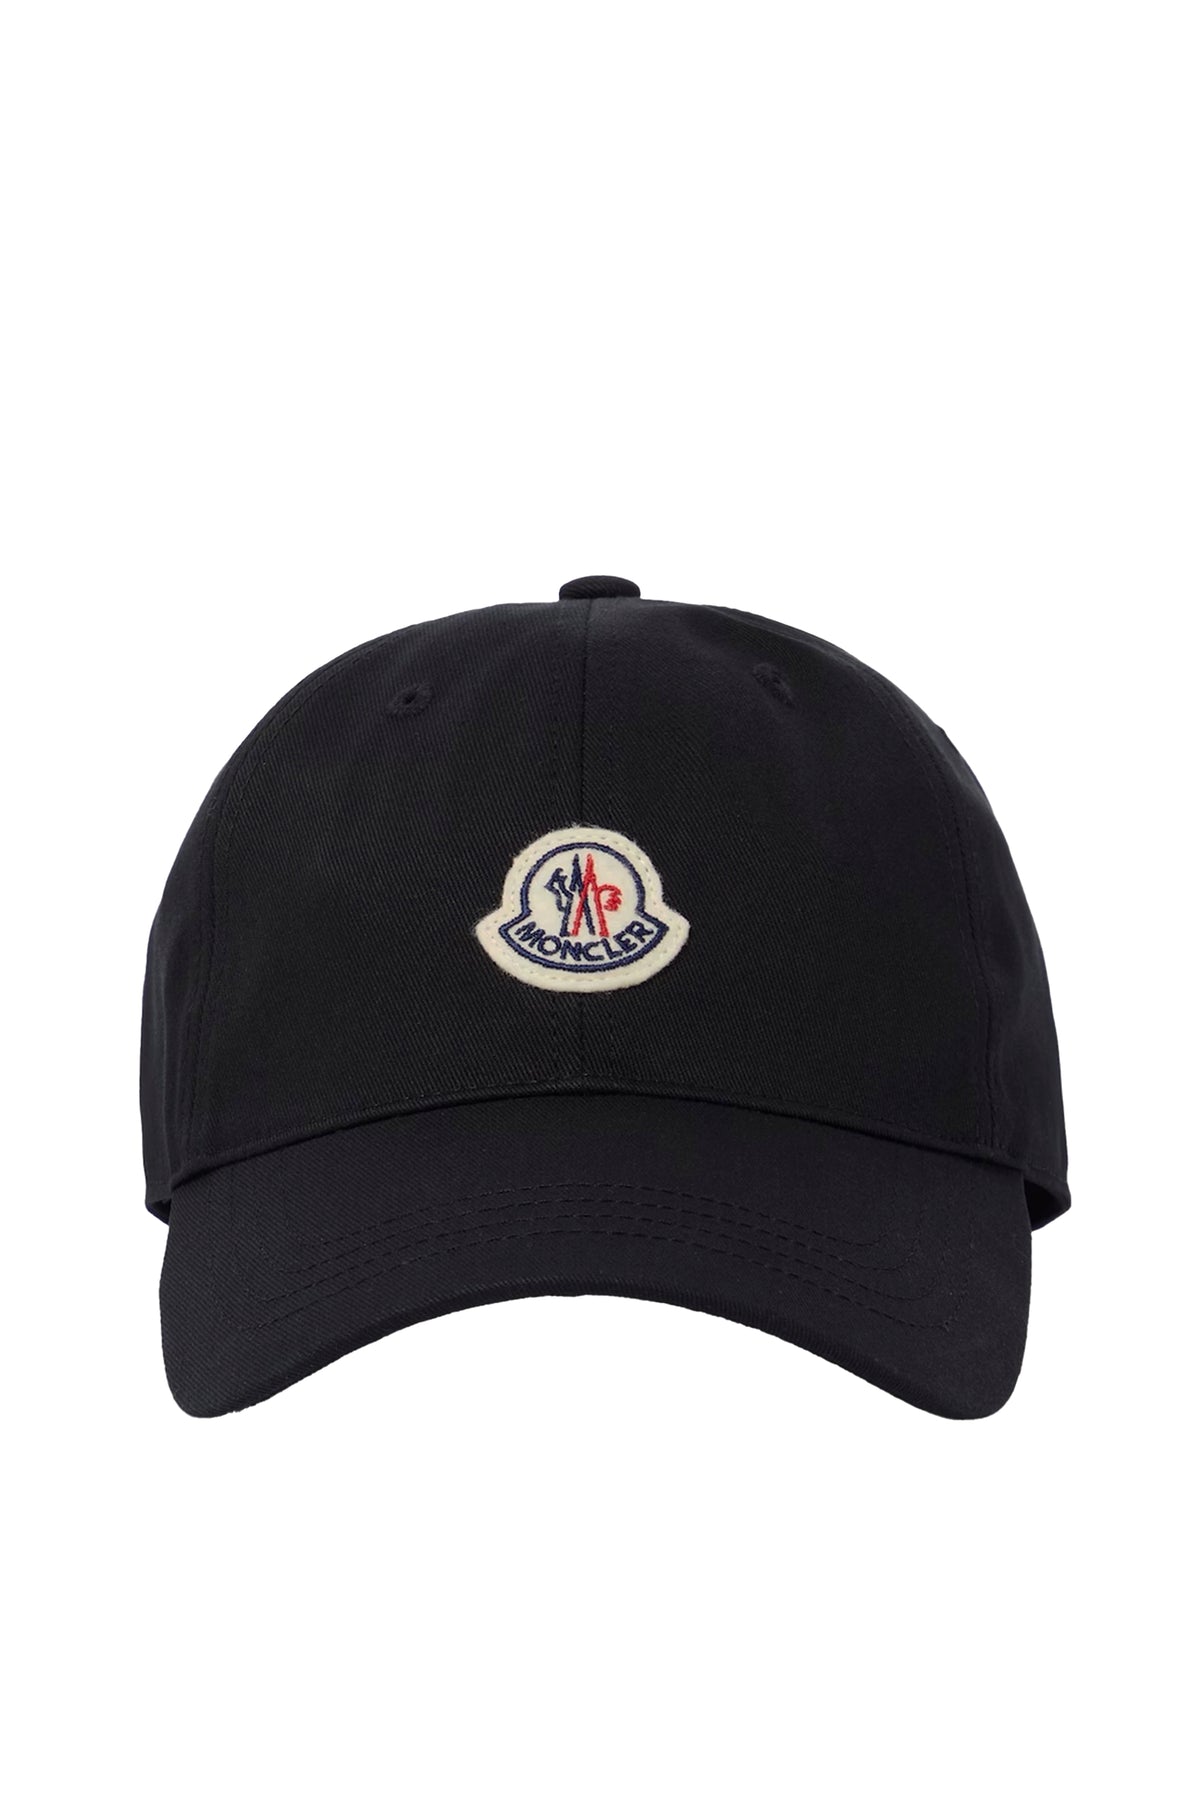 BASEBALL CAP / BLK (999)